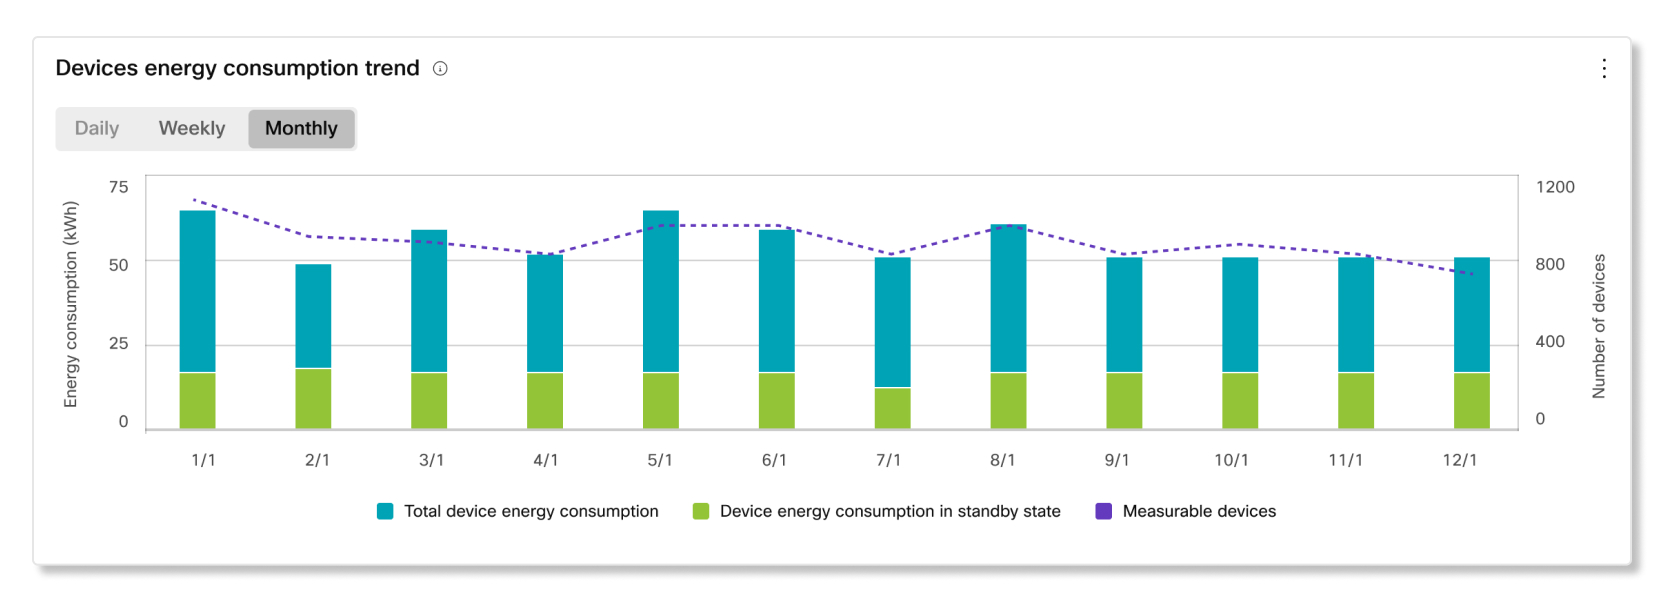 持続可能性分析におけるデバイスエネルギー消費動向